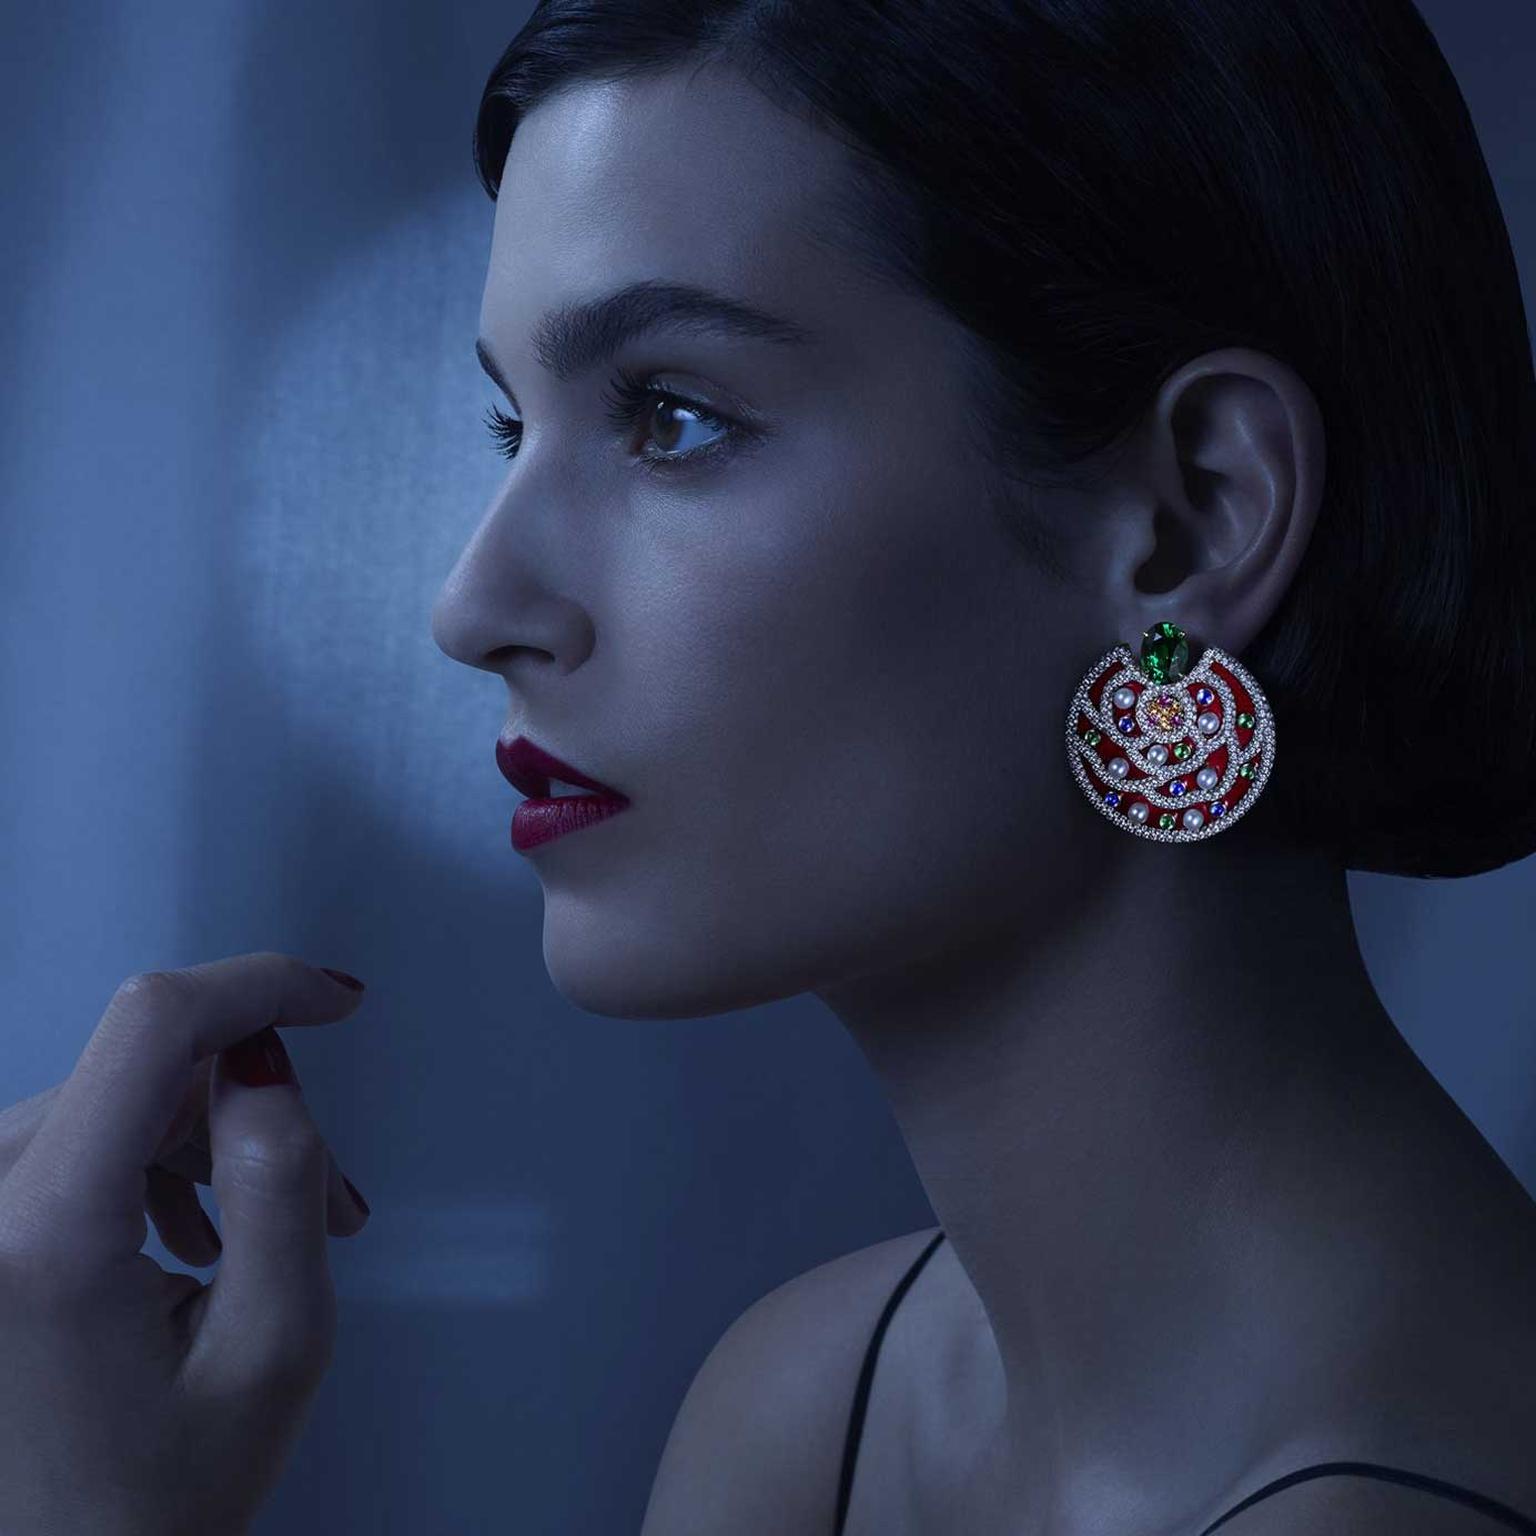 Le Paris Russe de Chanel earrings on model